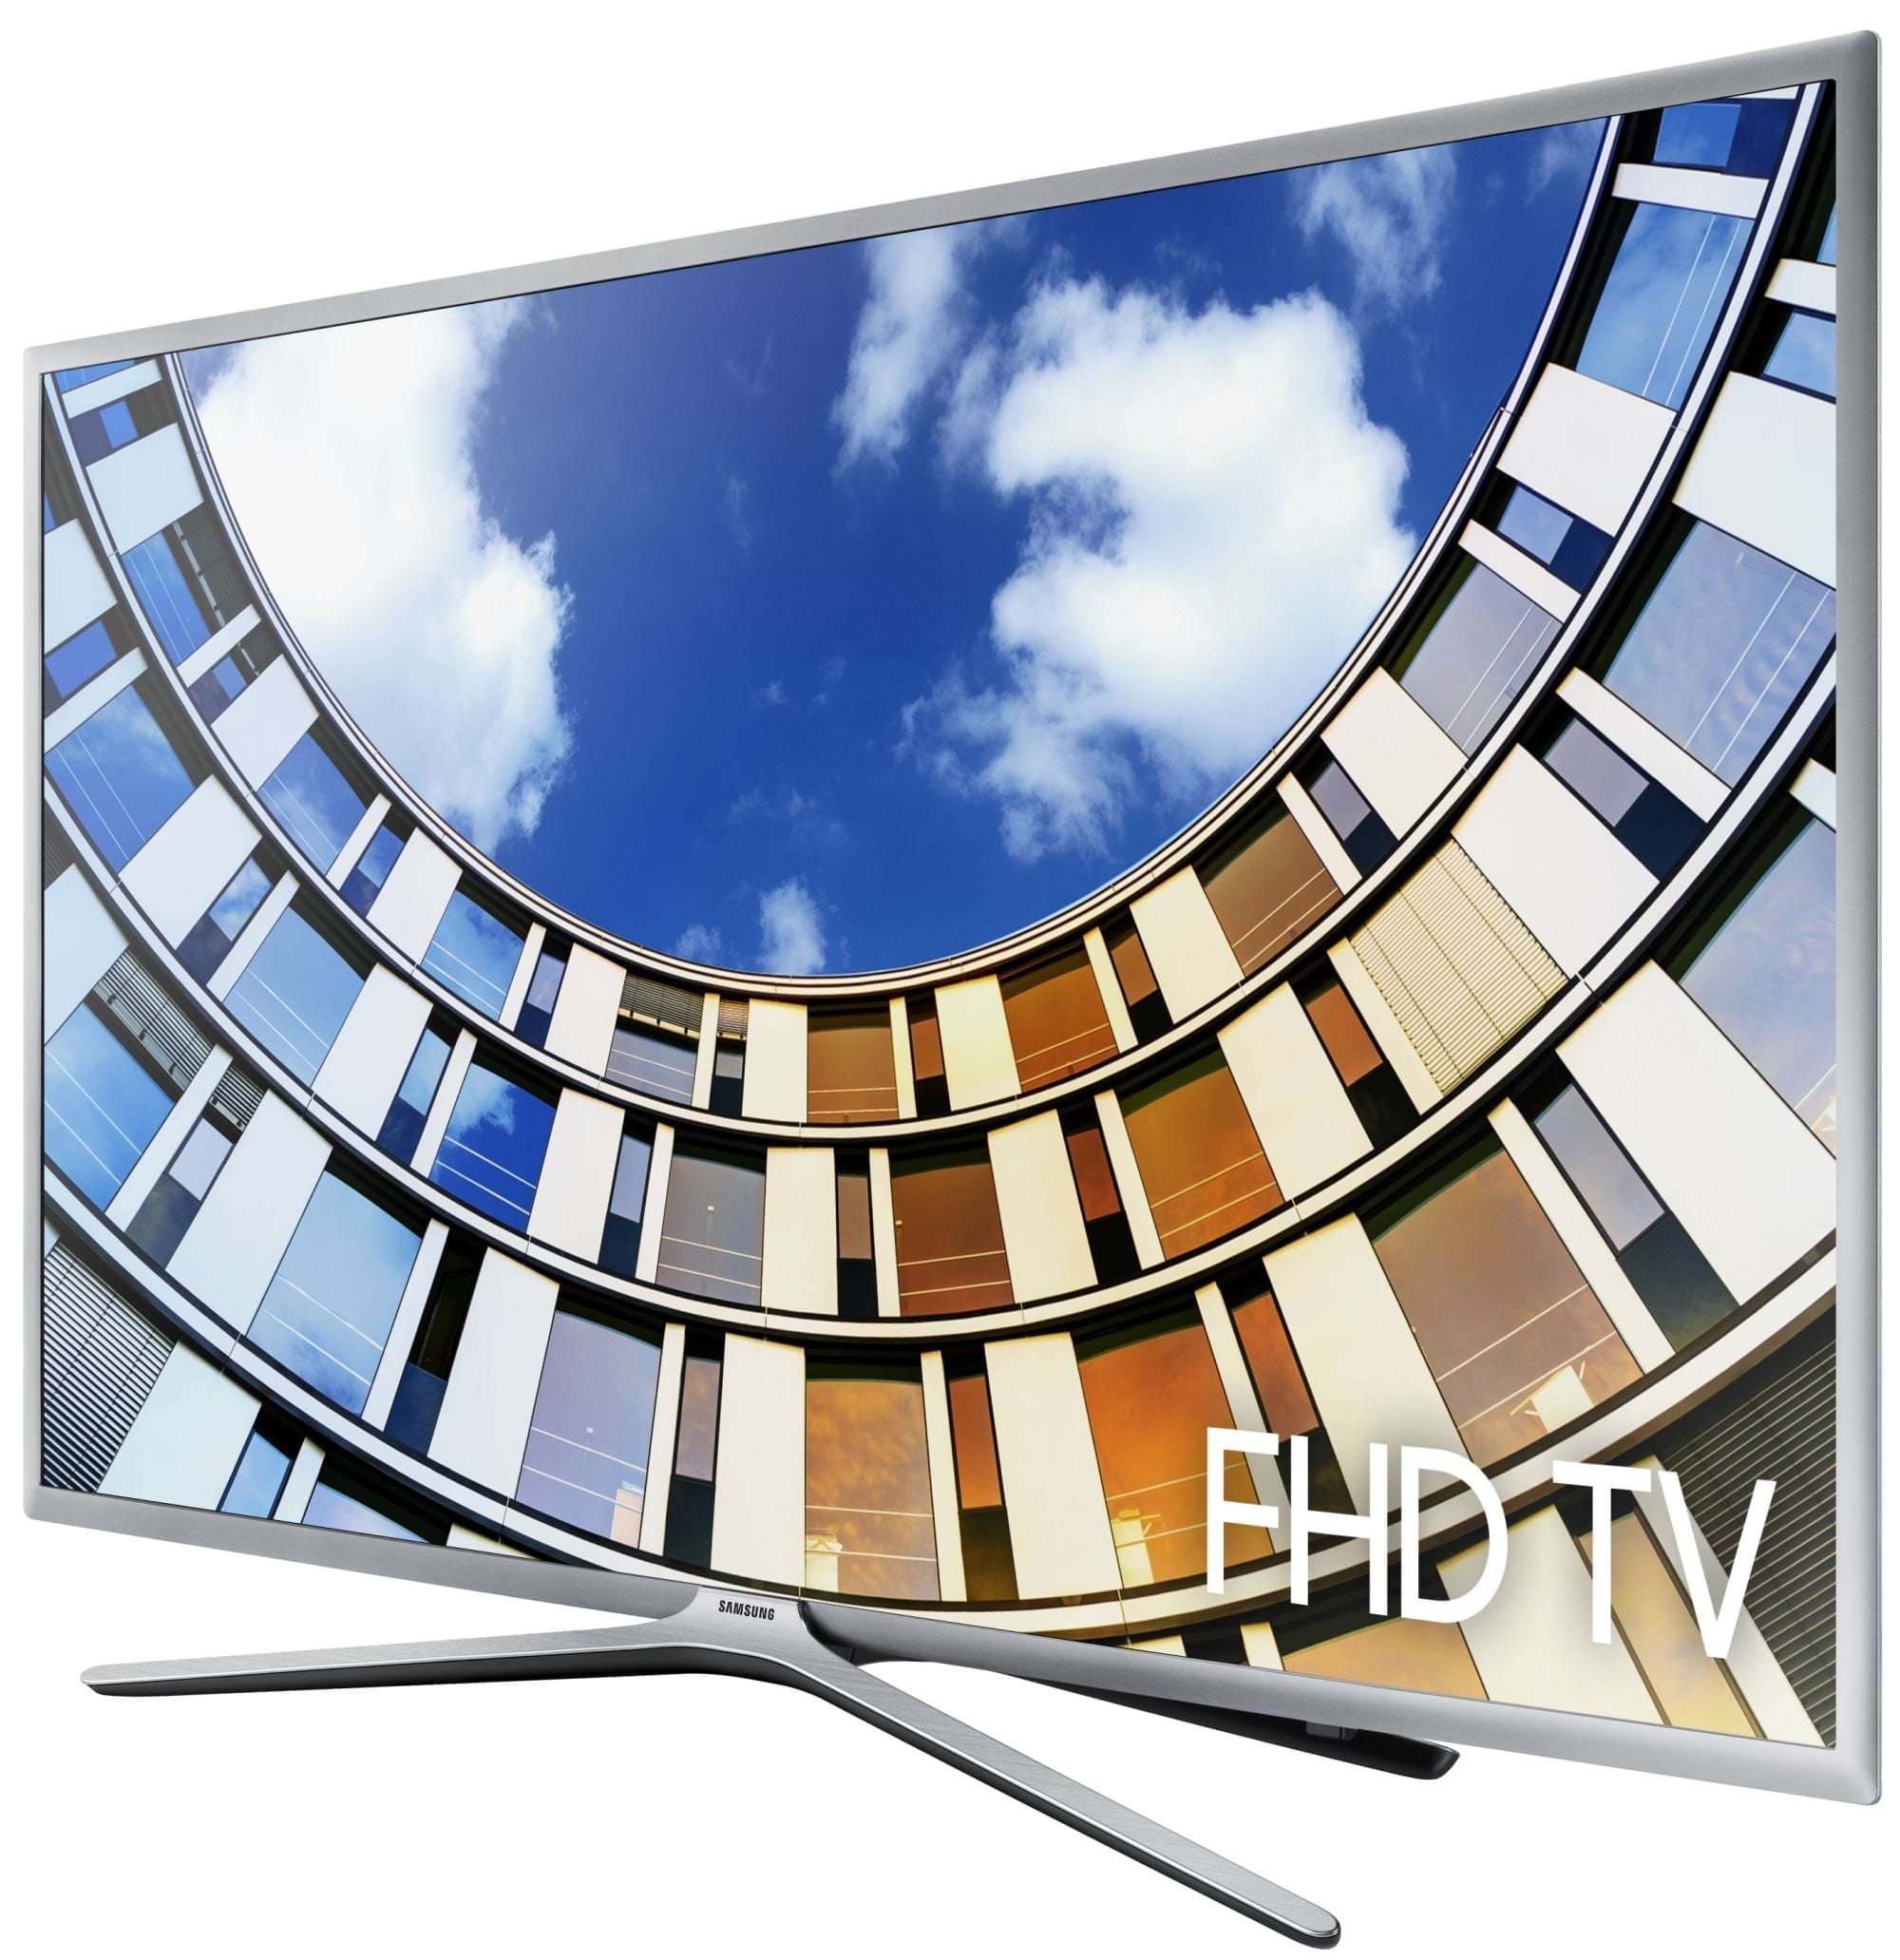 Samsung UE43M5670 - Televisie